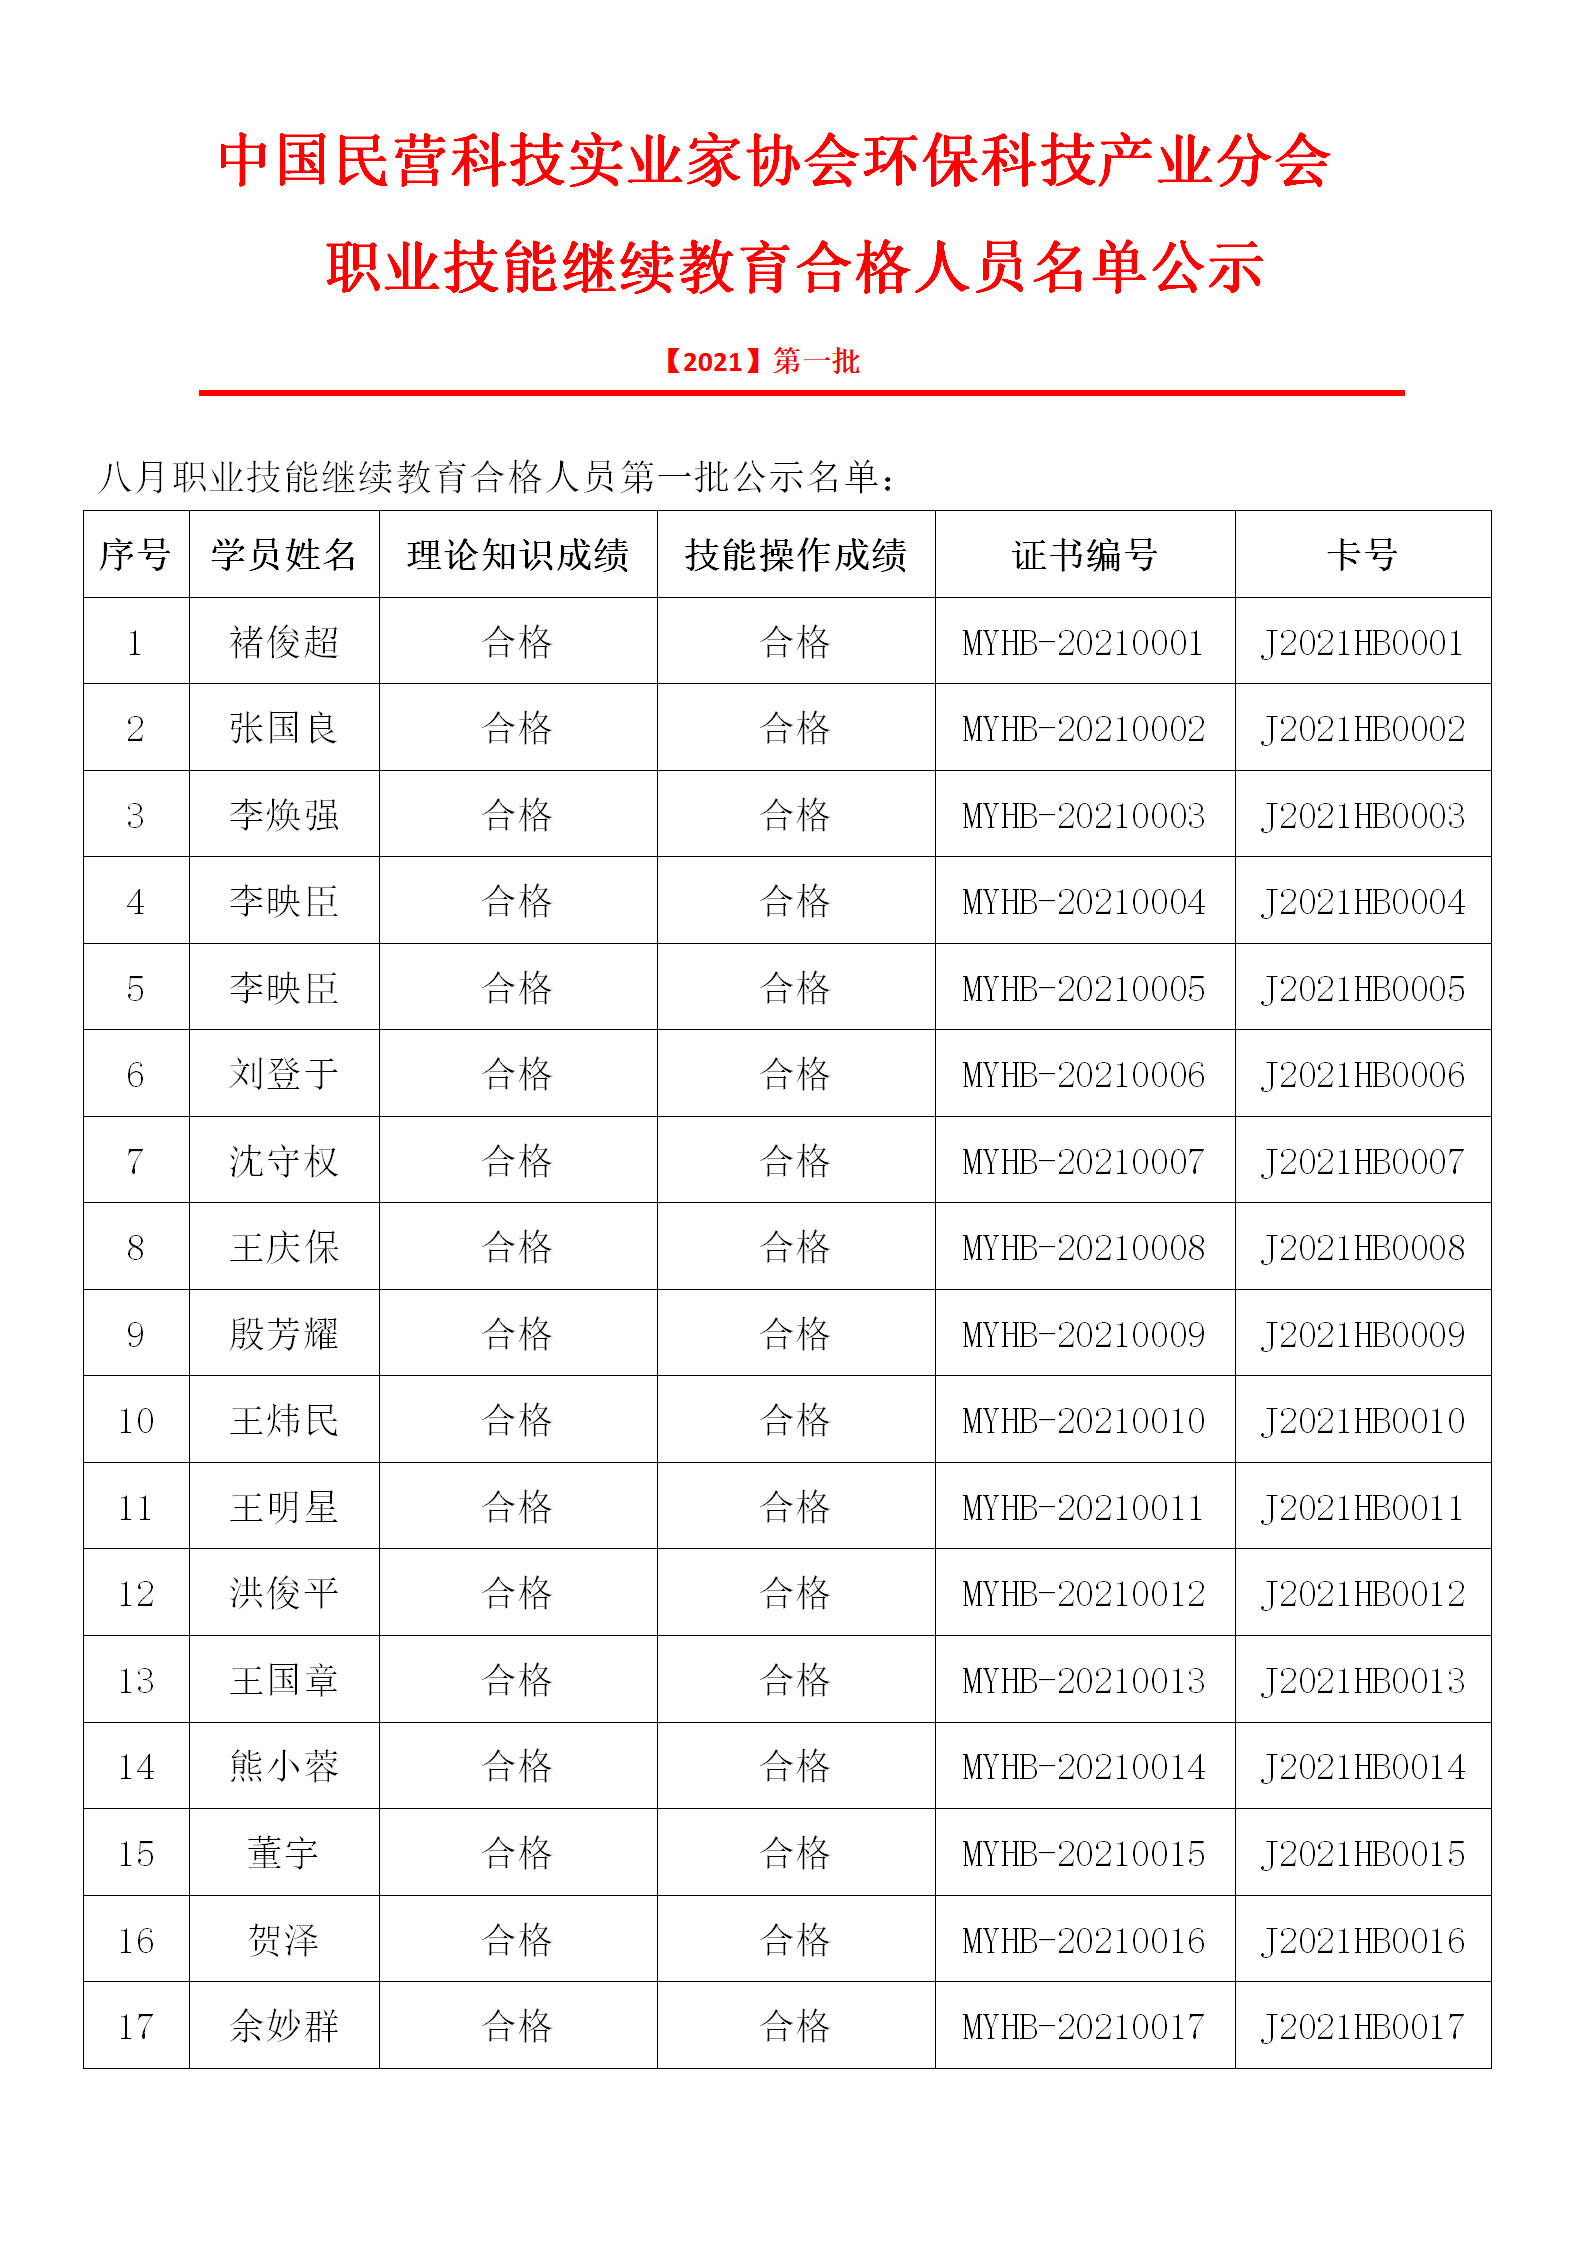 中国民营科技实业家协会环保科技产业分会-公示_01.png